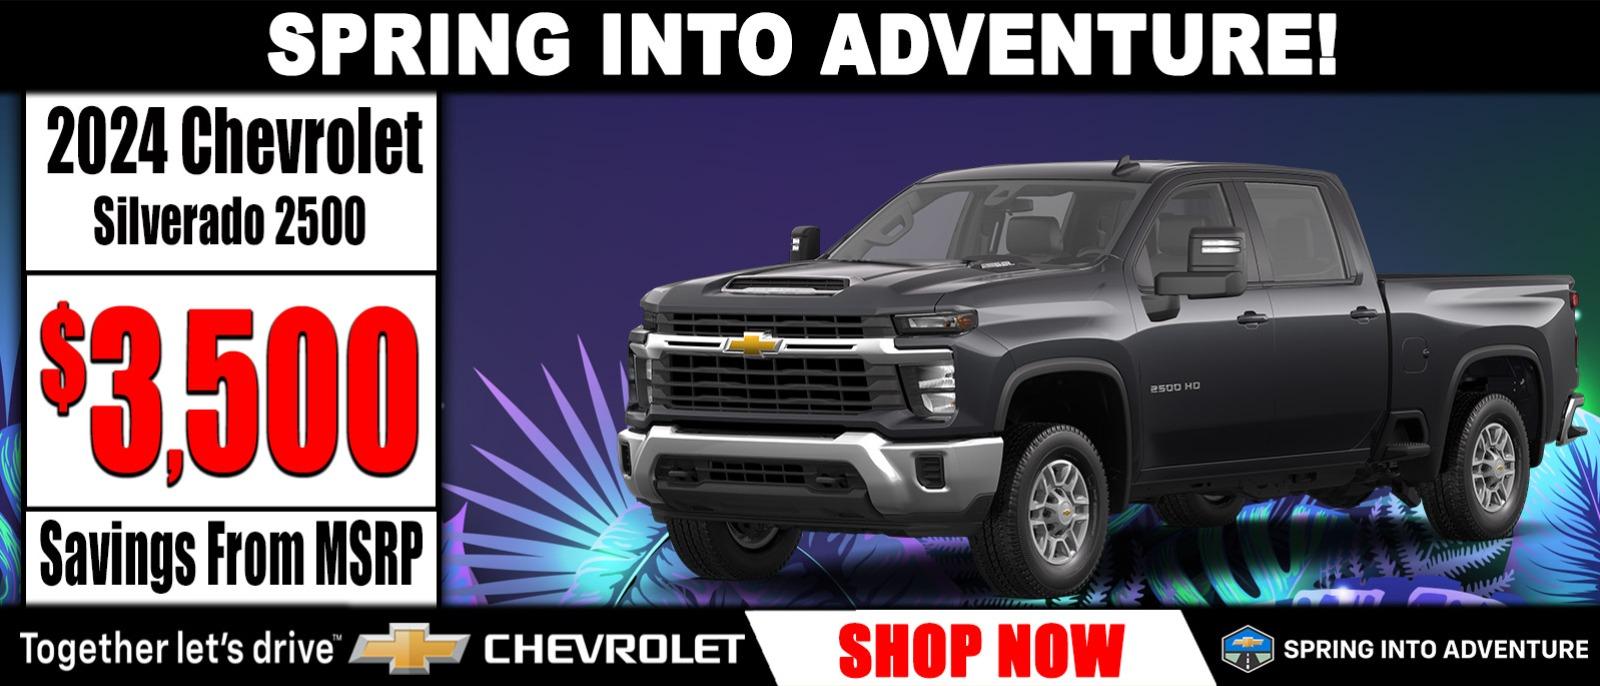 2024 Chevrolet Silverado 2500 Sale